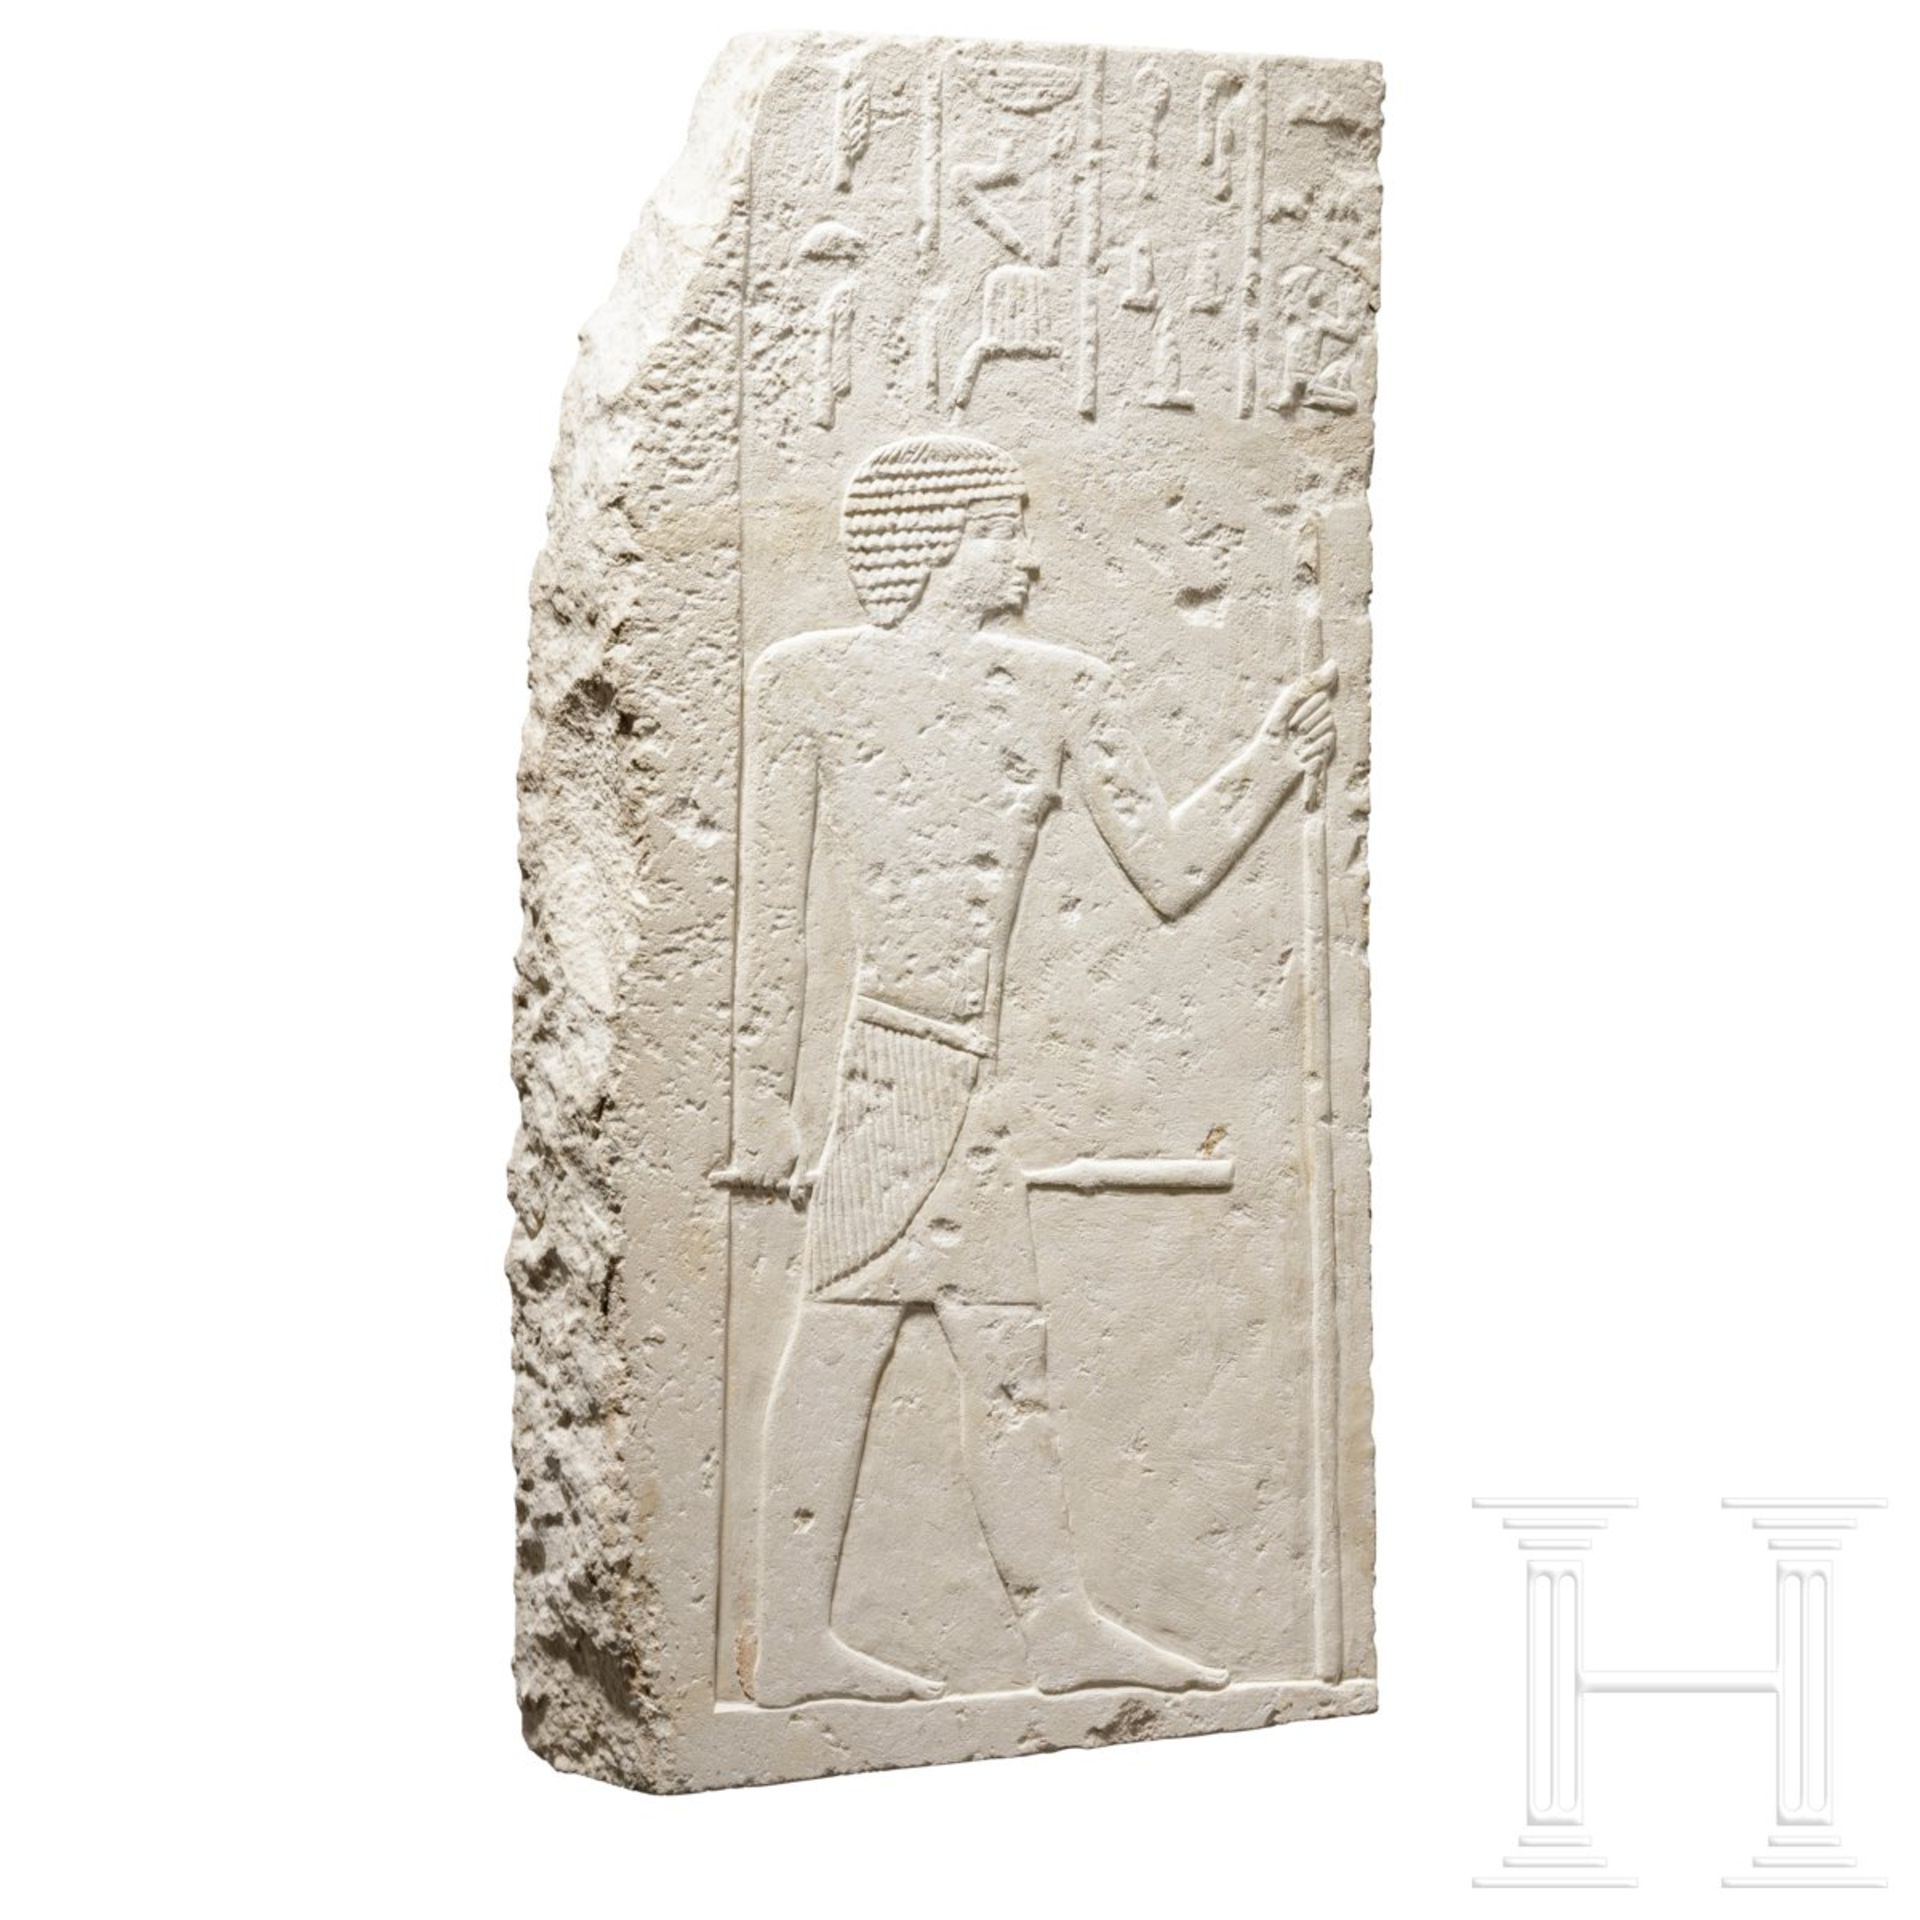 Eindrucksvolles Kalksteinrelief des Iti, Ägypten, Altes Reich, 5. - 6. Dynastie, 2498-2181 v. Chr. - Bild 3 aus 7